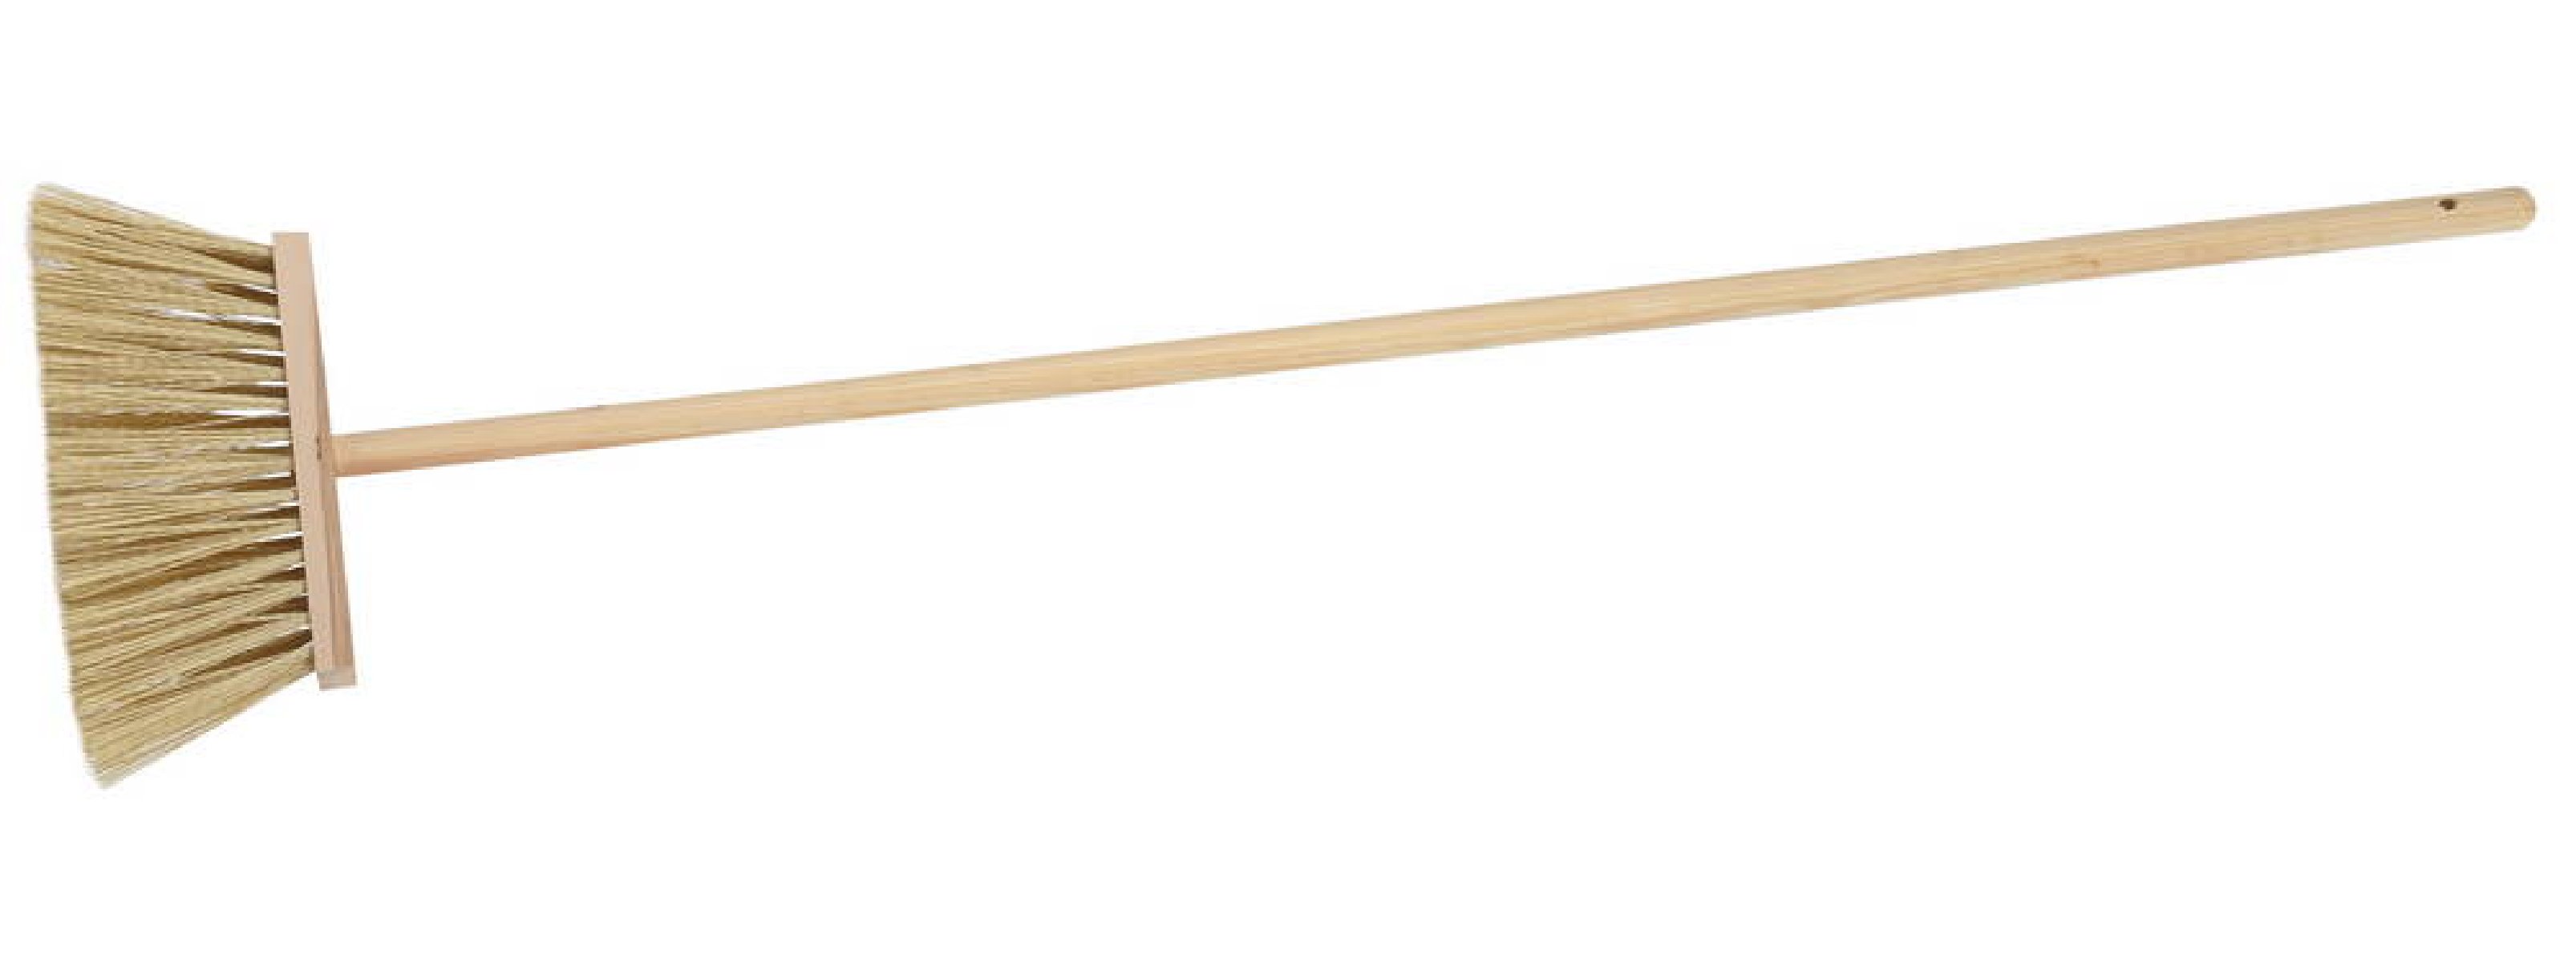 Метла ЗУБР 240 мм с деревянной ручкой 120 см (39231-24)Купить